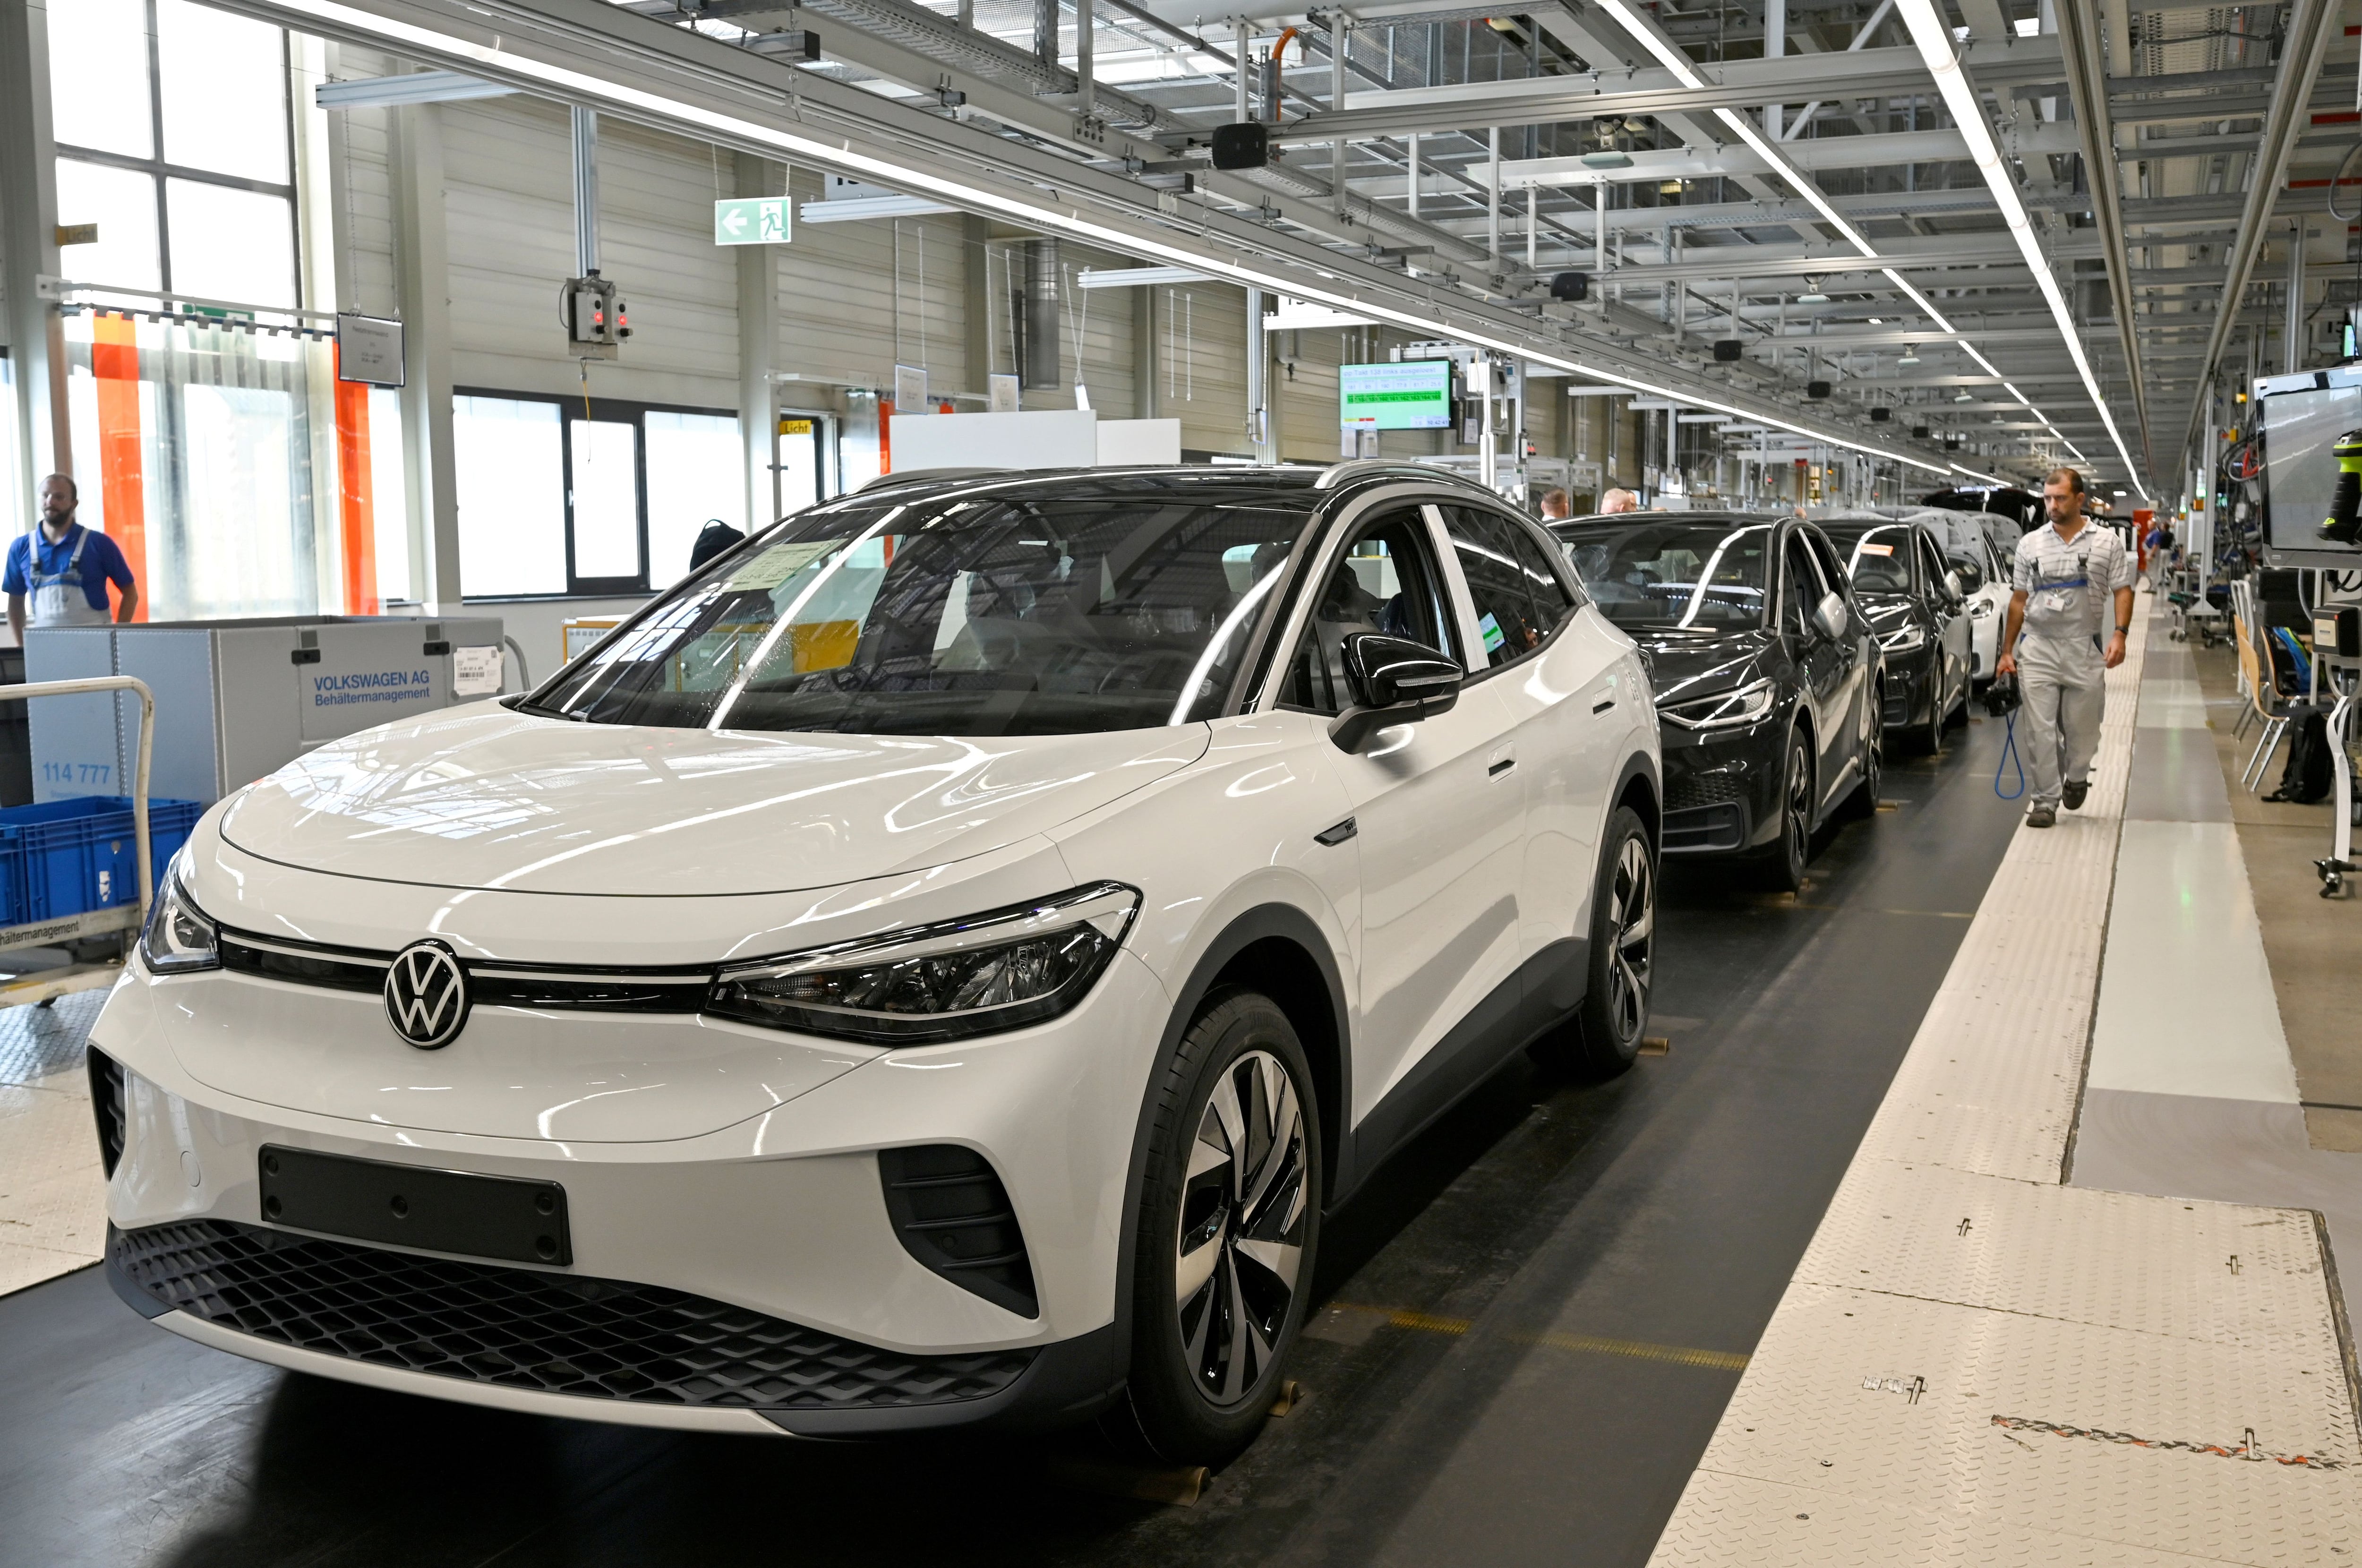 La planta de VW en Emden, Alemania, ha interrumpido por dos semanas la fabricación de los VW ID.4 ante una caída en la demanda de autos eléctricos que parece afectar a todas las marcas. REUTERS/Matthias Rietschel/File Photo